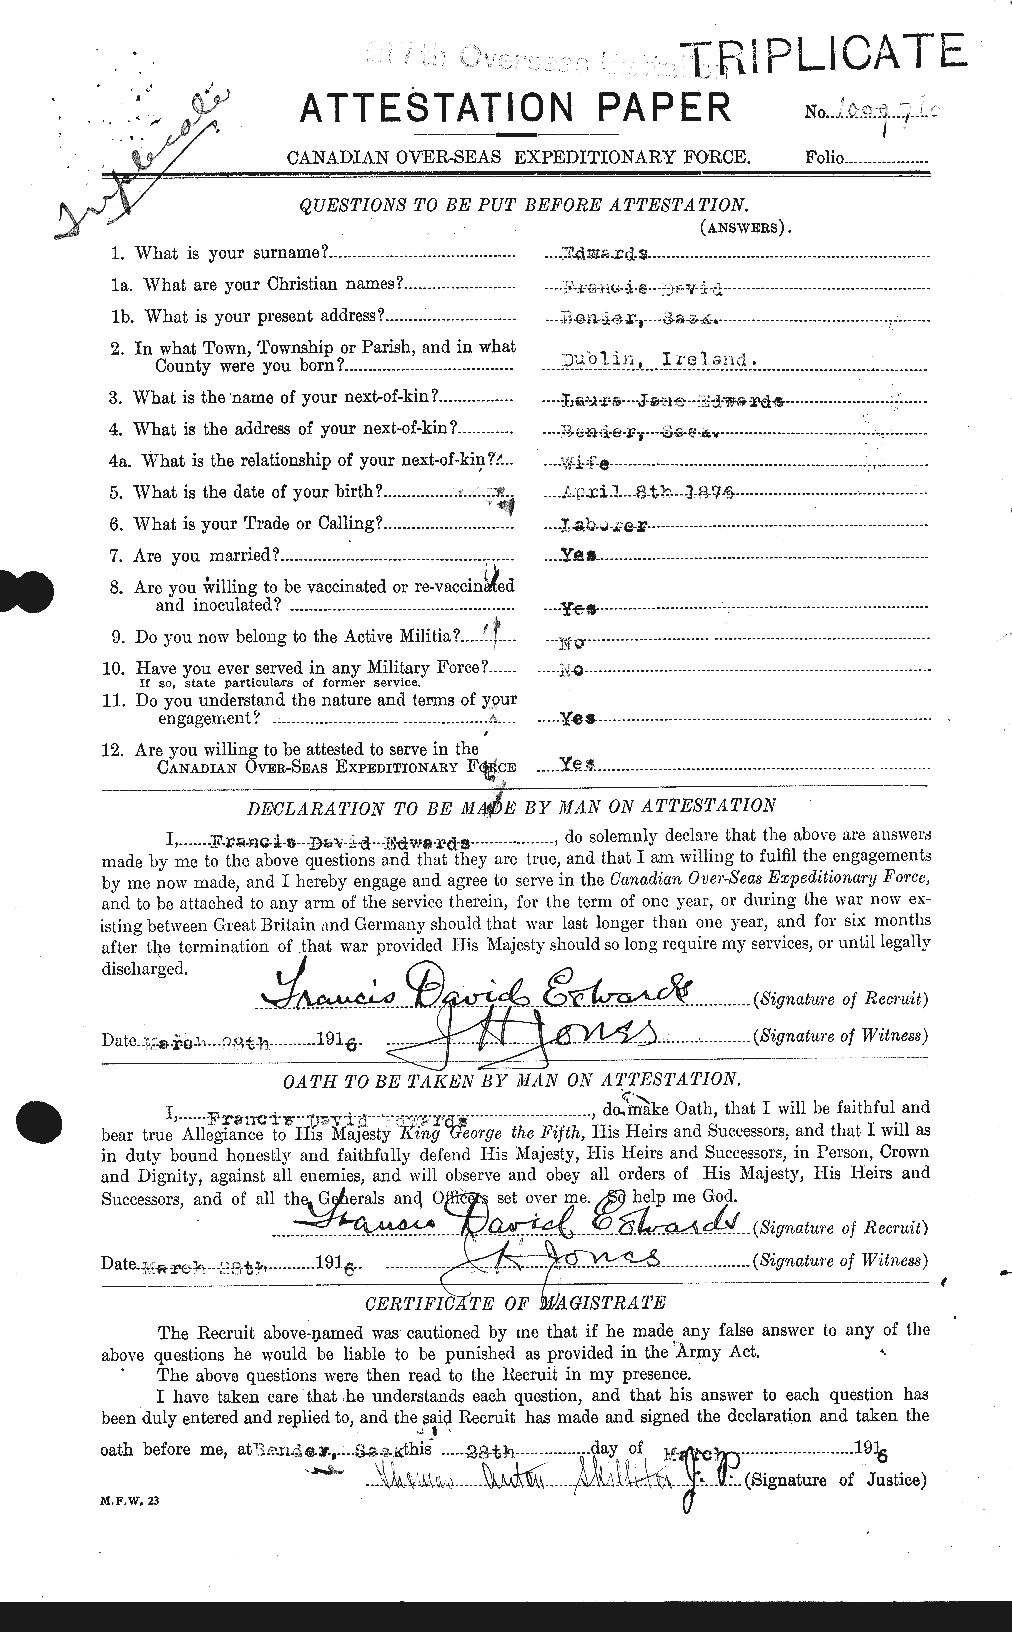 Dossiers du Personnel de la Première Guerre mondiale - CEC 309034a